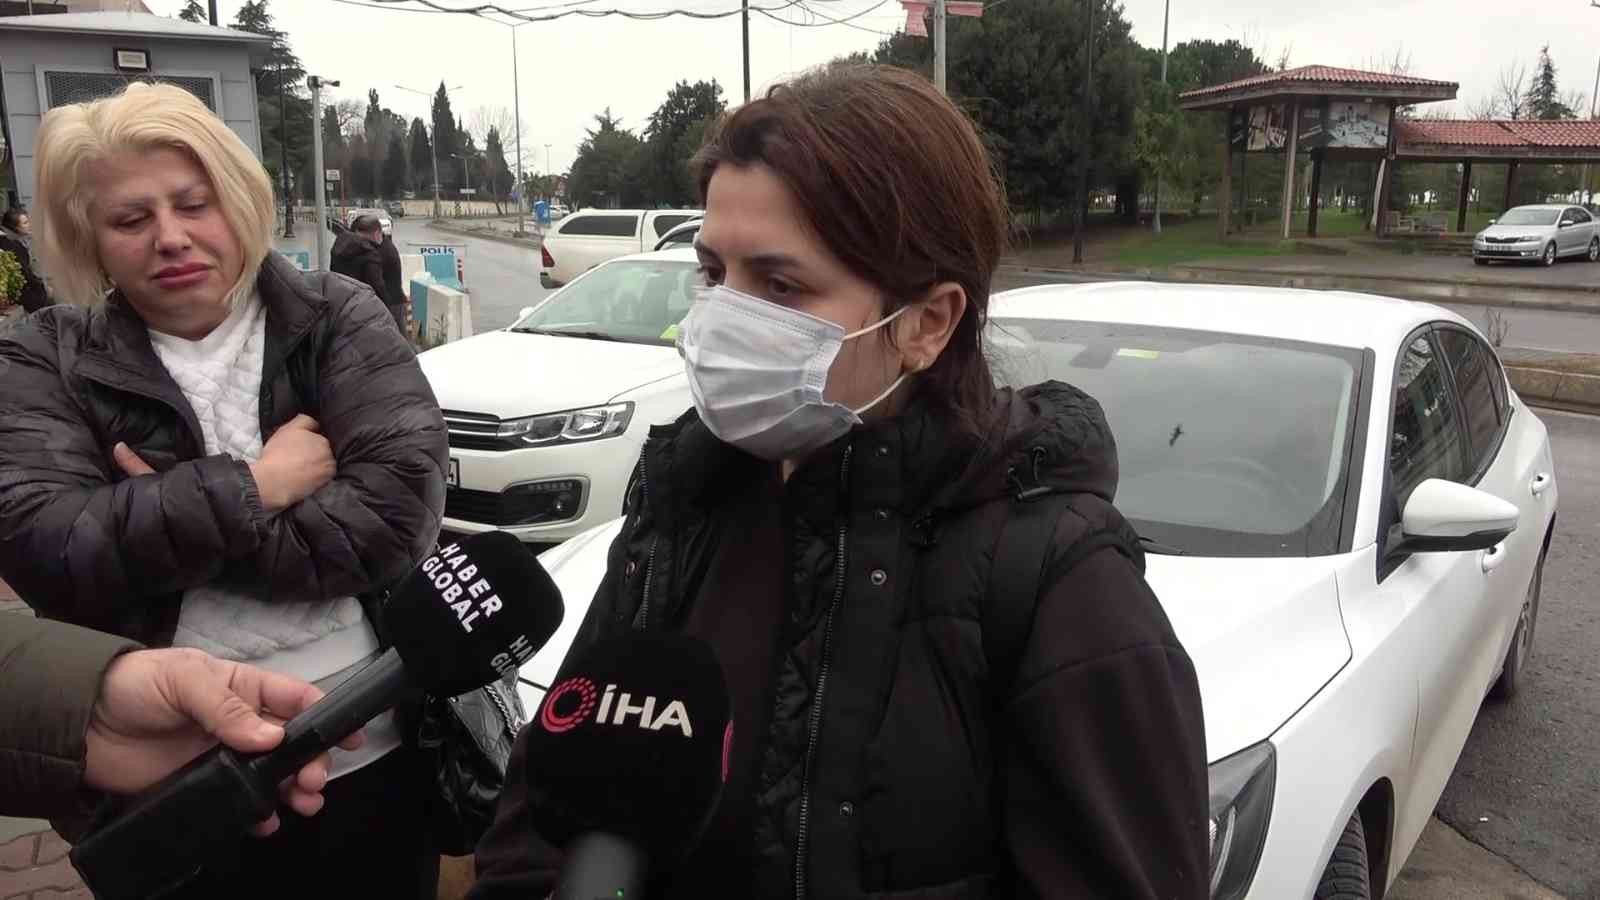 Tuzla’da genç avukatın öldürüldüğü olayda yeni ayrıntılar ortaya çıktı #istanbul